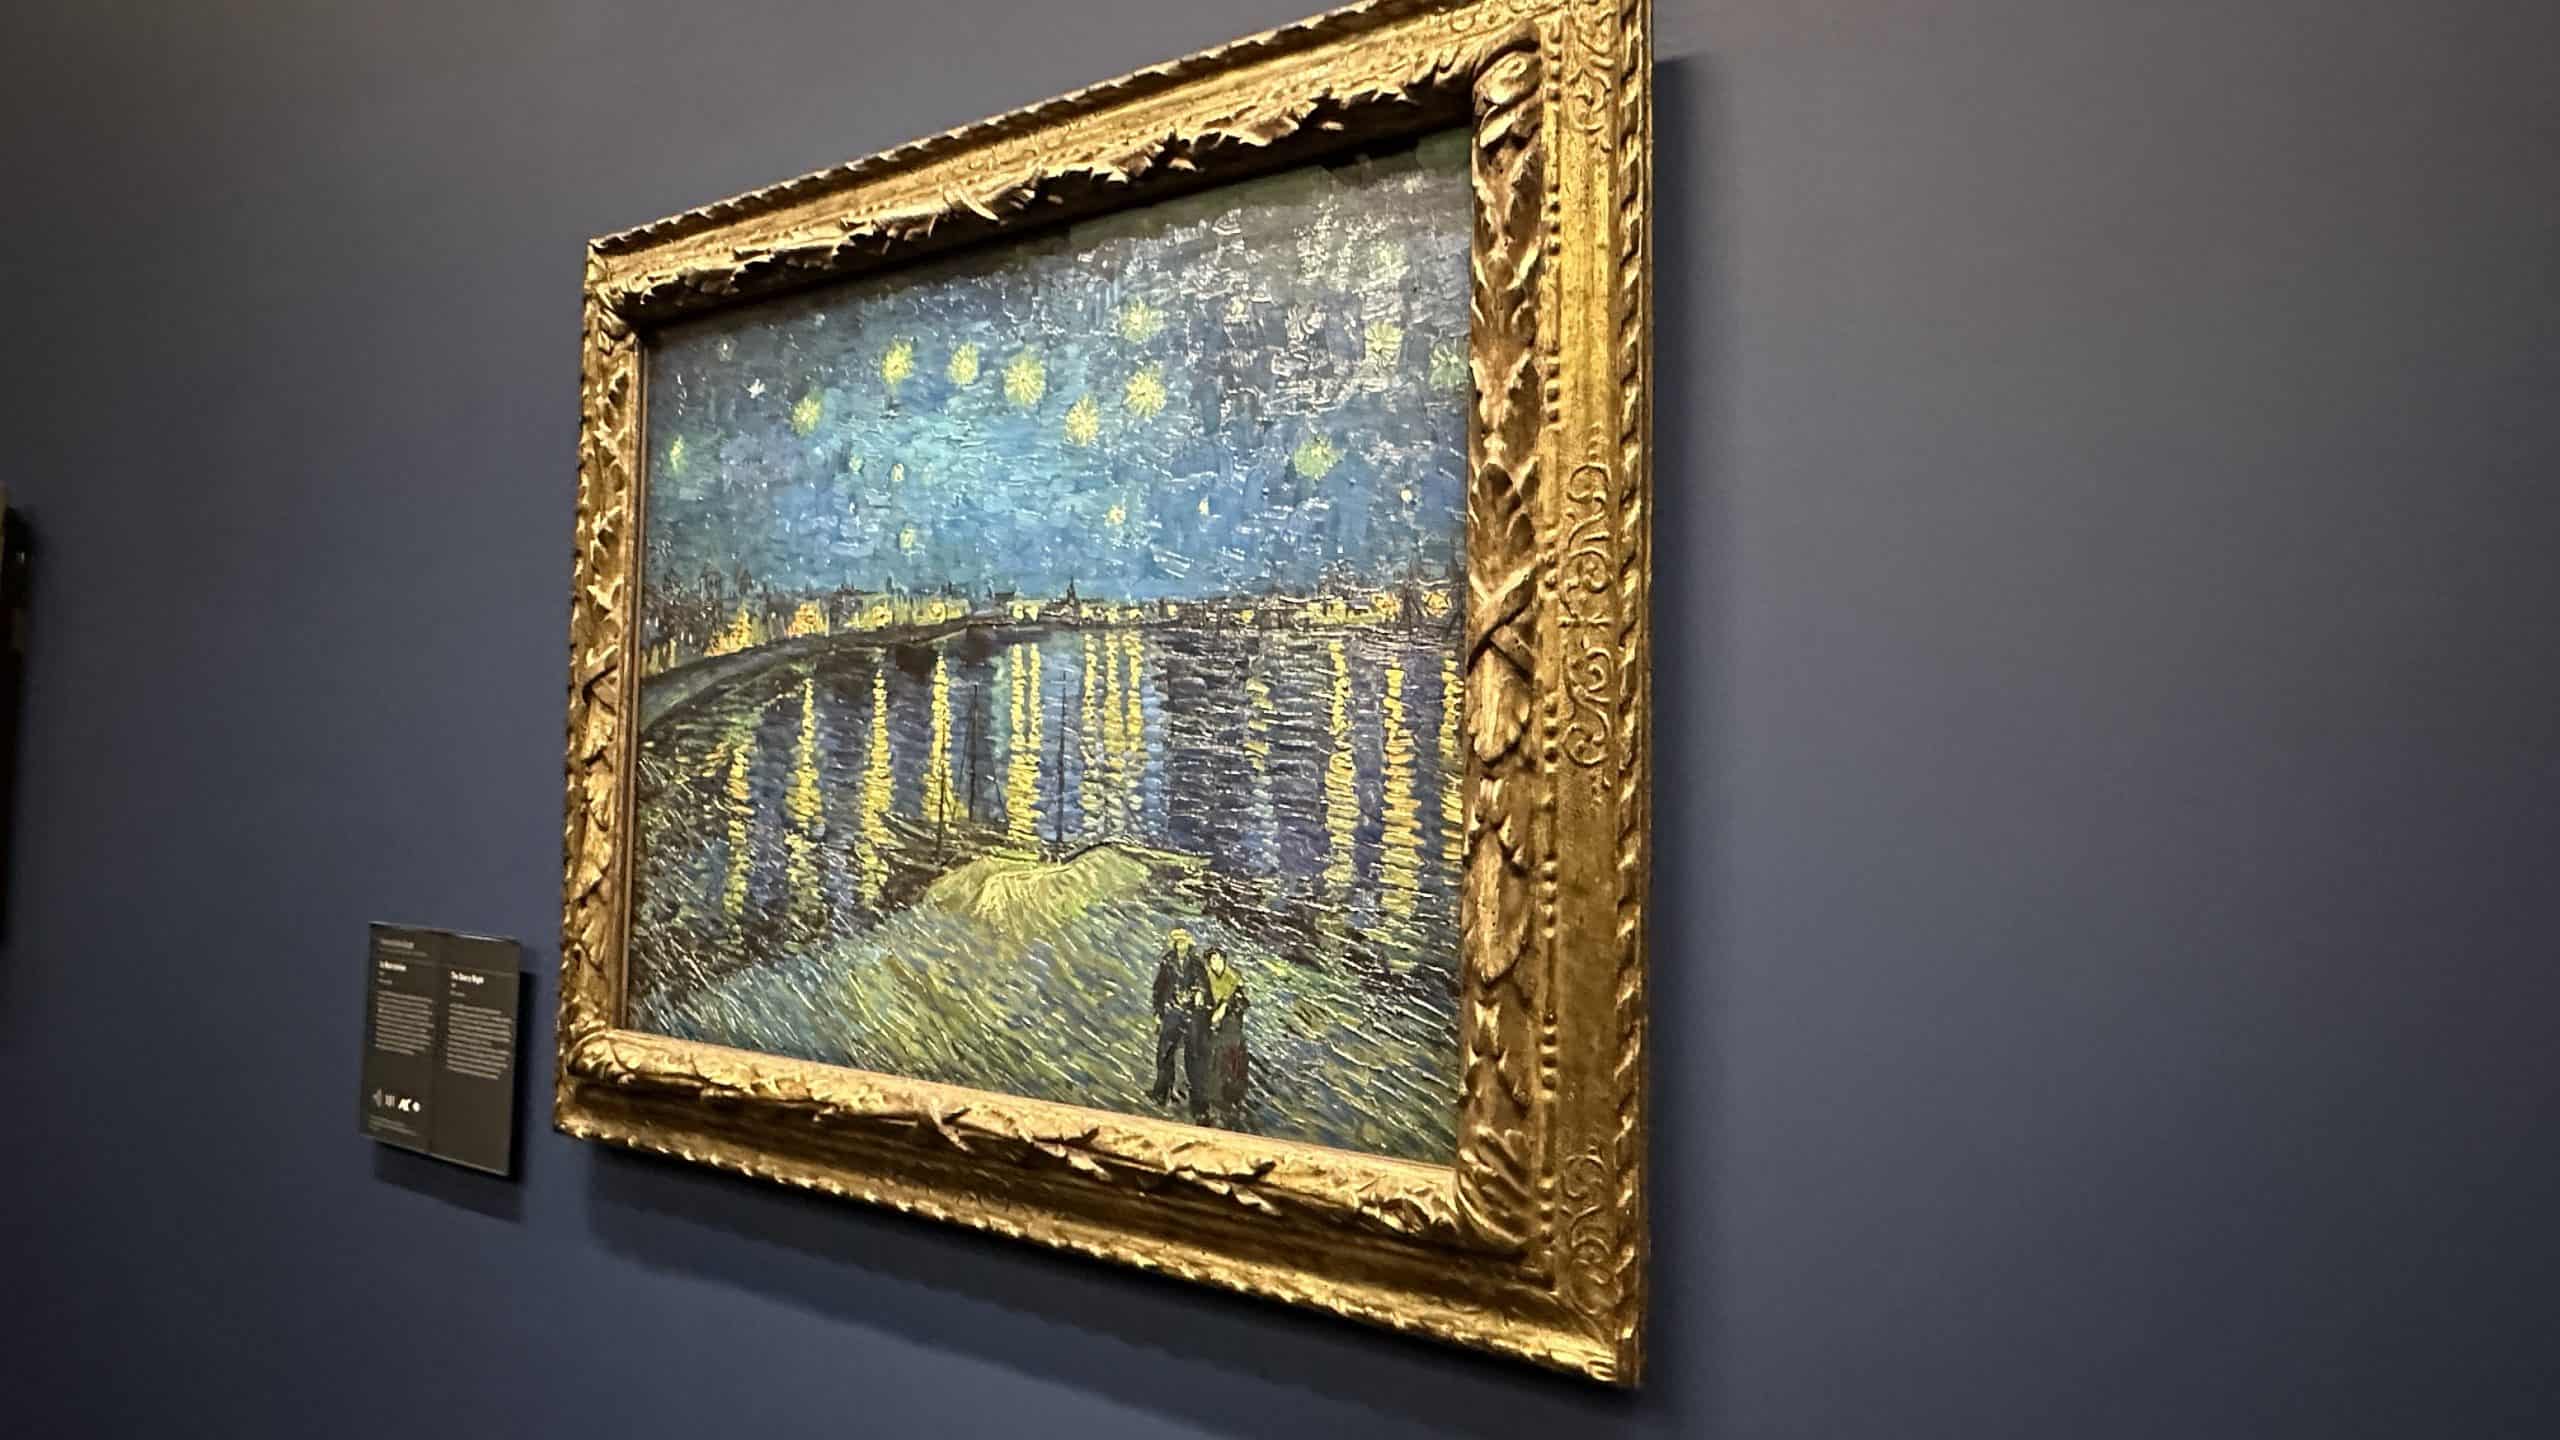 Starry Nights by Van Gogh